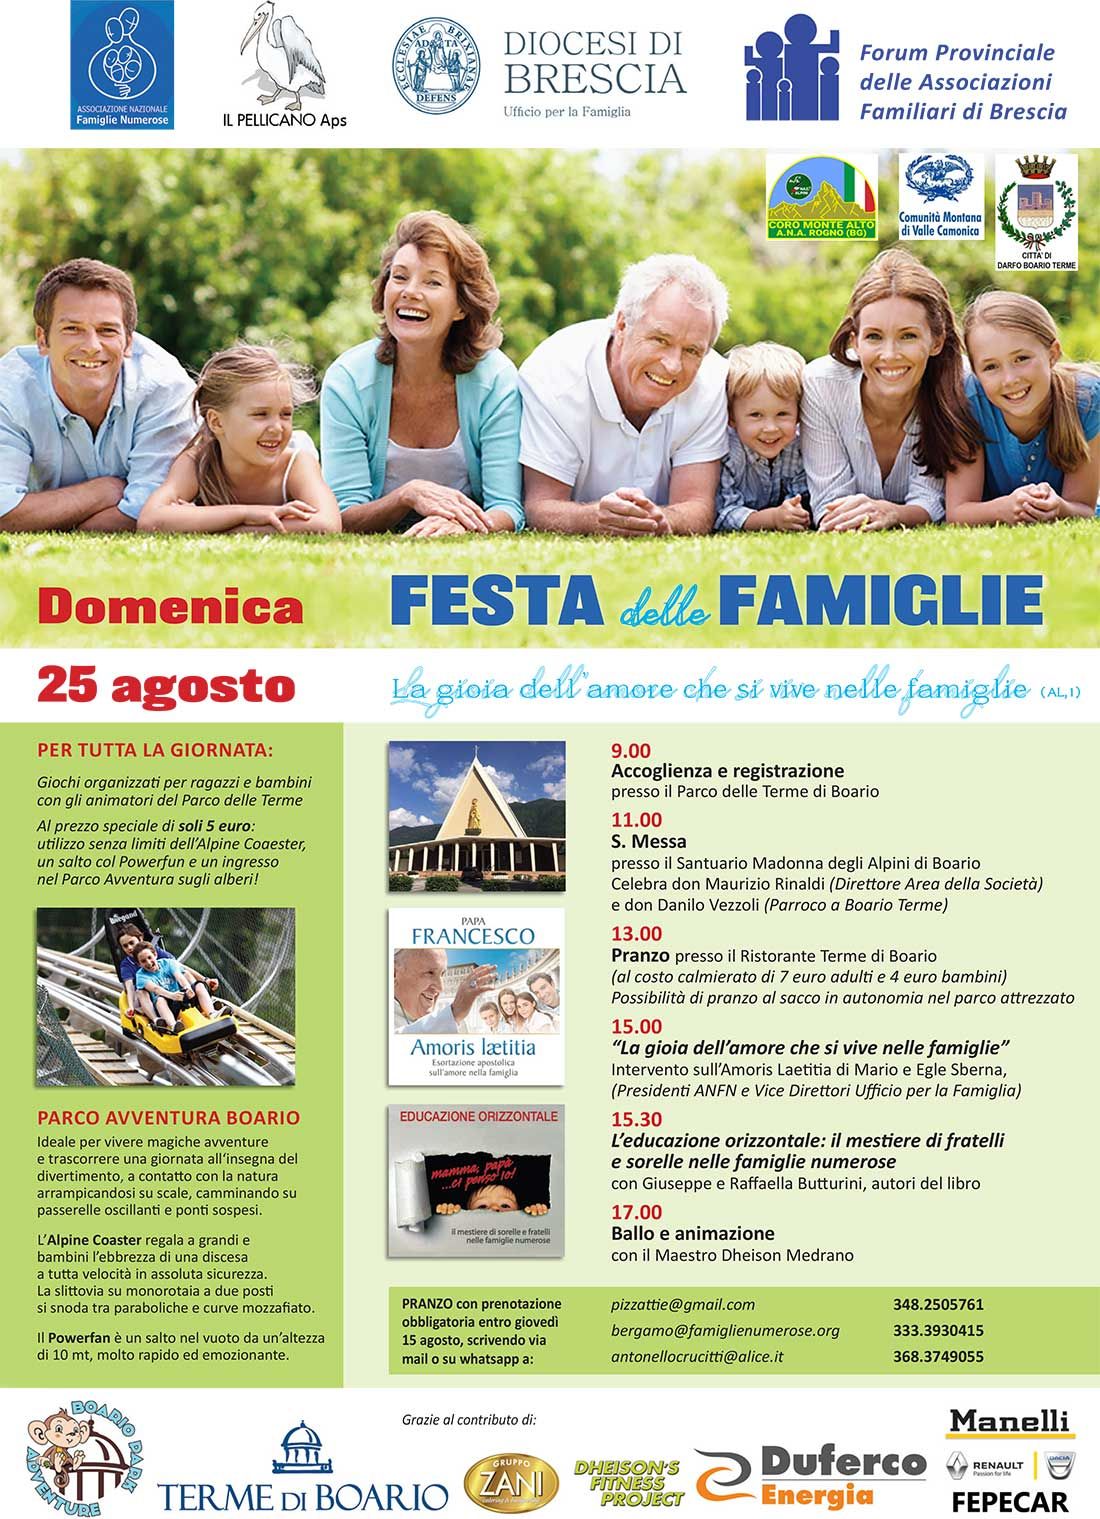 Festa-delle-Famiglie-25-agosto-2019-Darfo